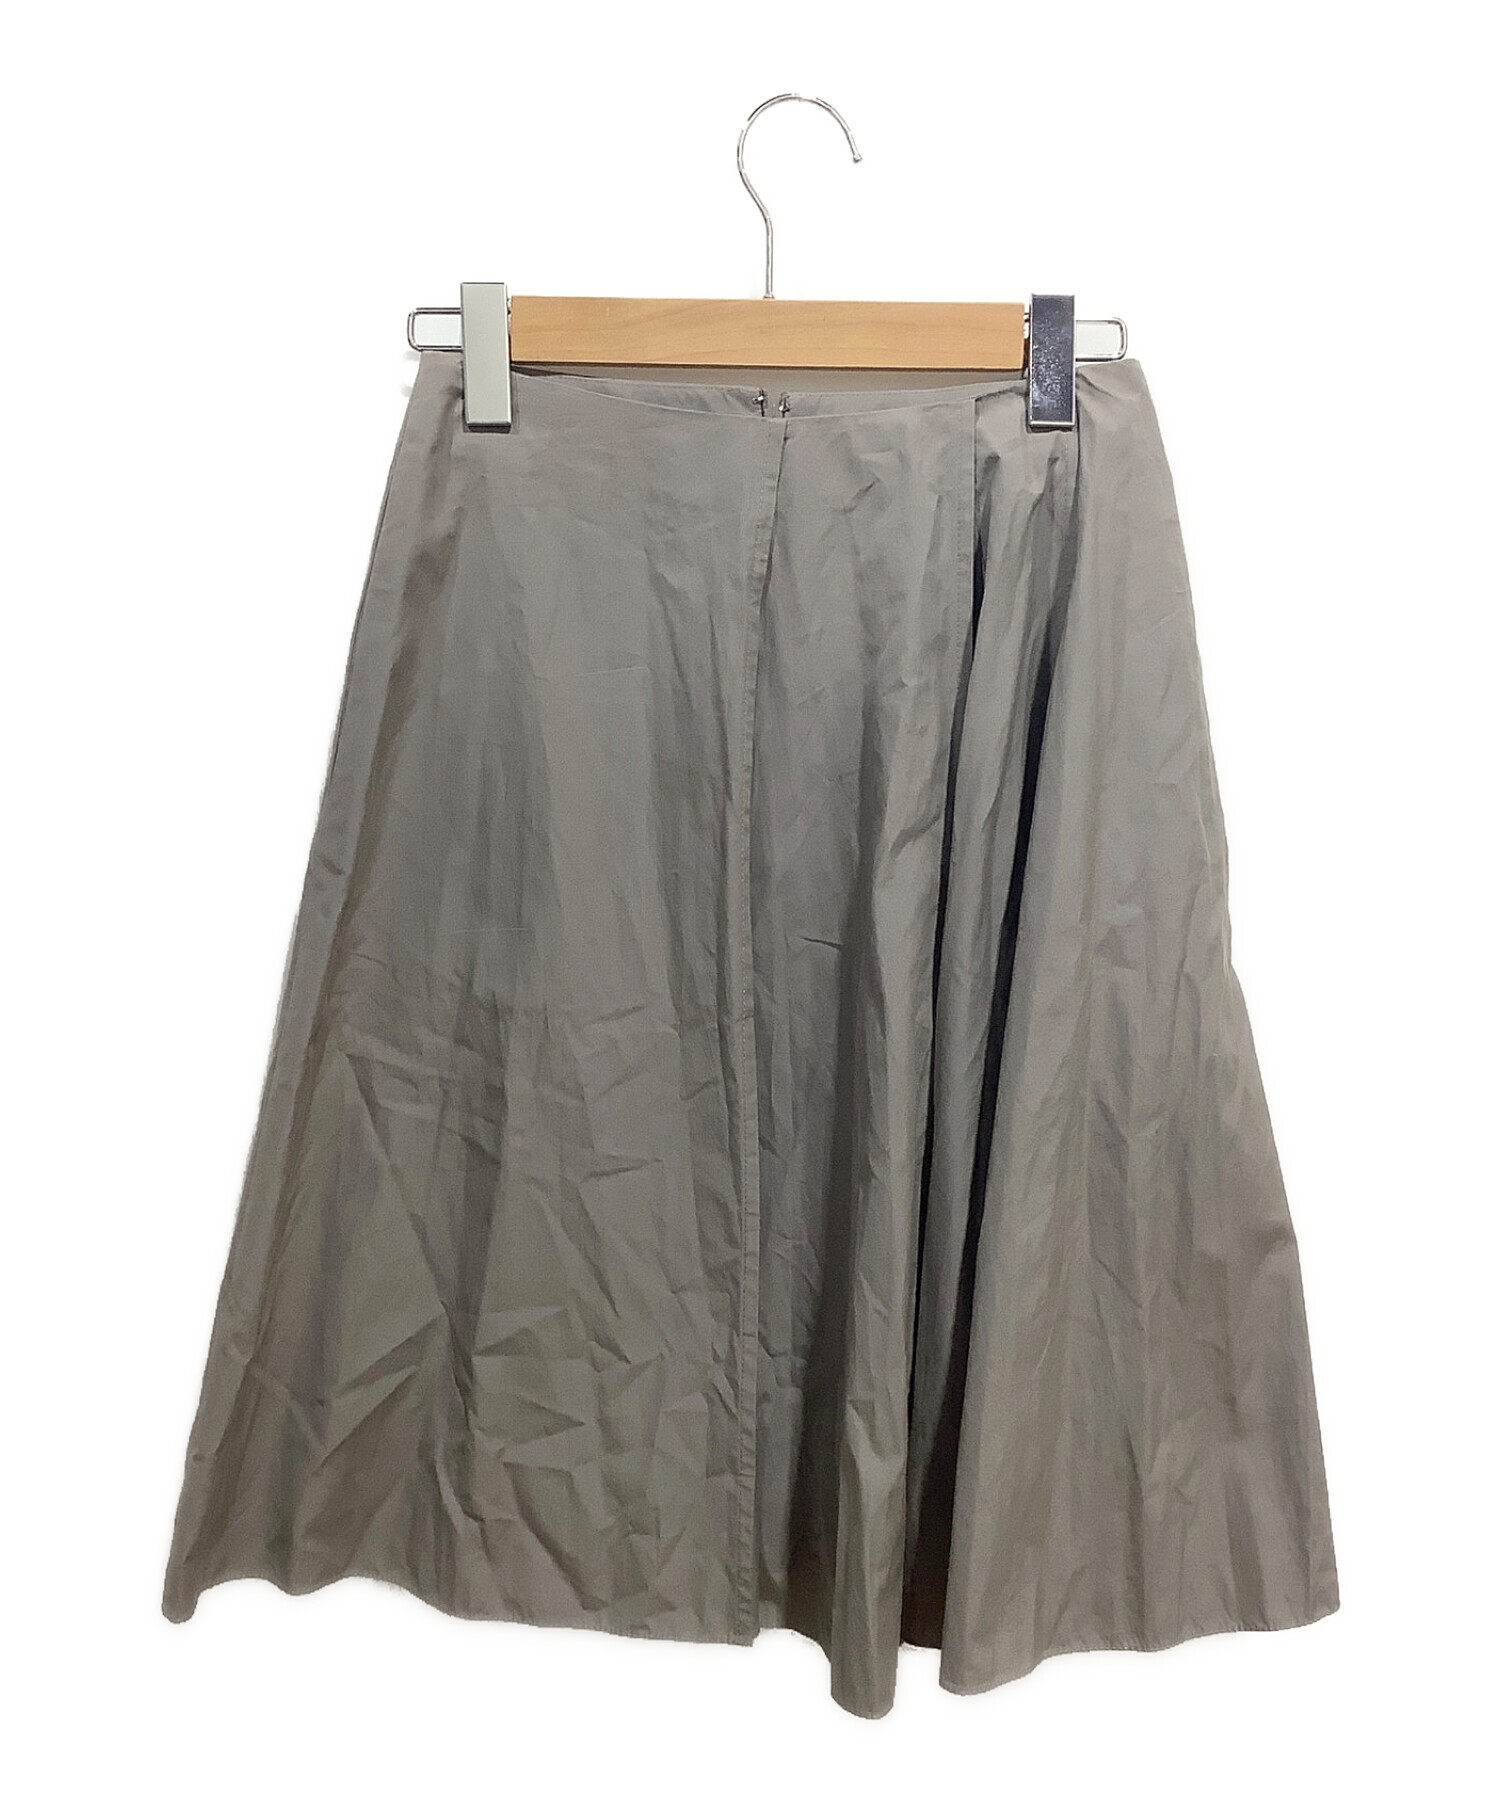 8,000円ジル・サンダー スカート